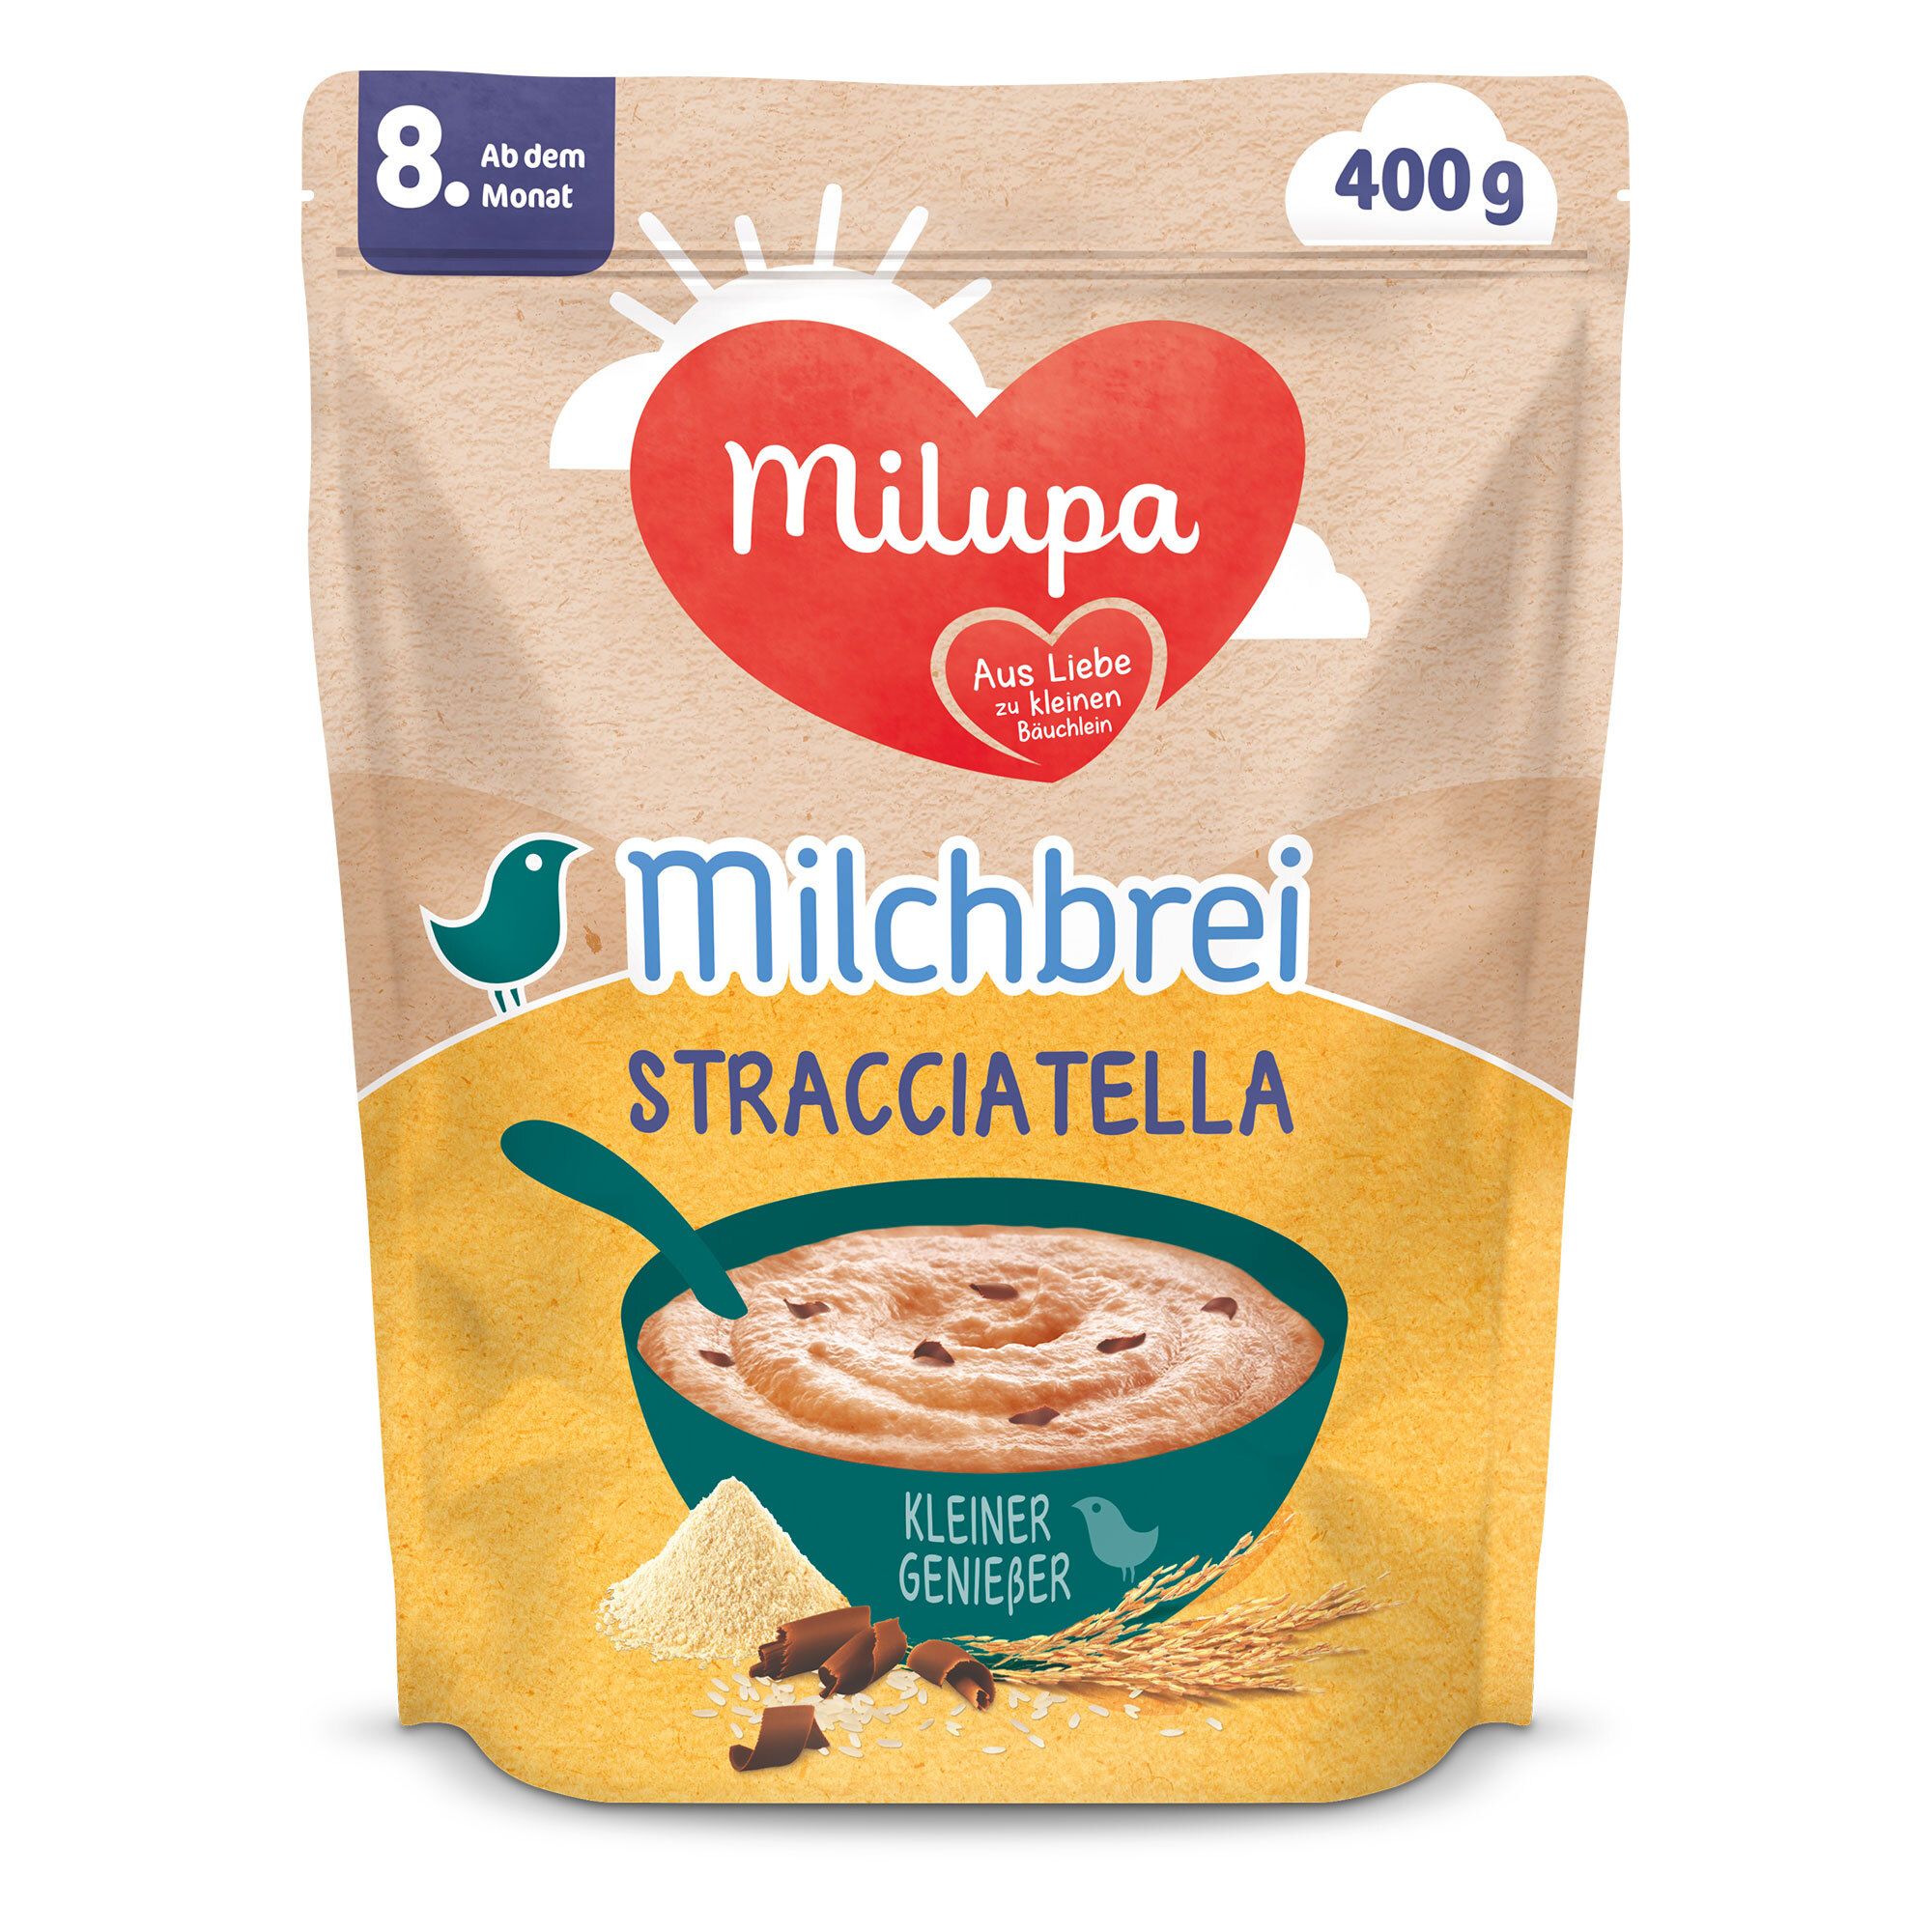 Milupa Kleiner Genießer Milchbrei Stracciatella ab dem 8 Monat